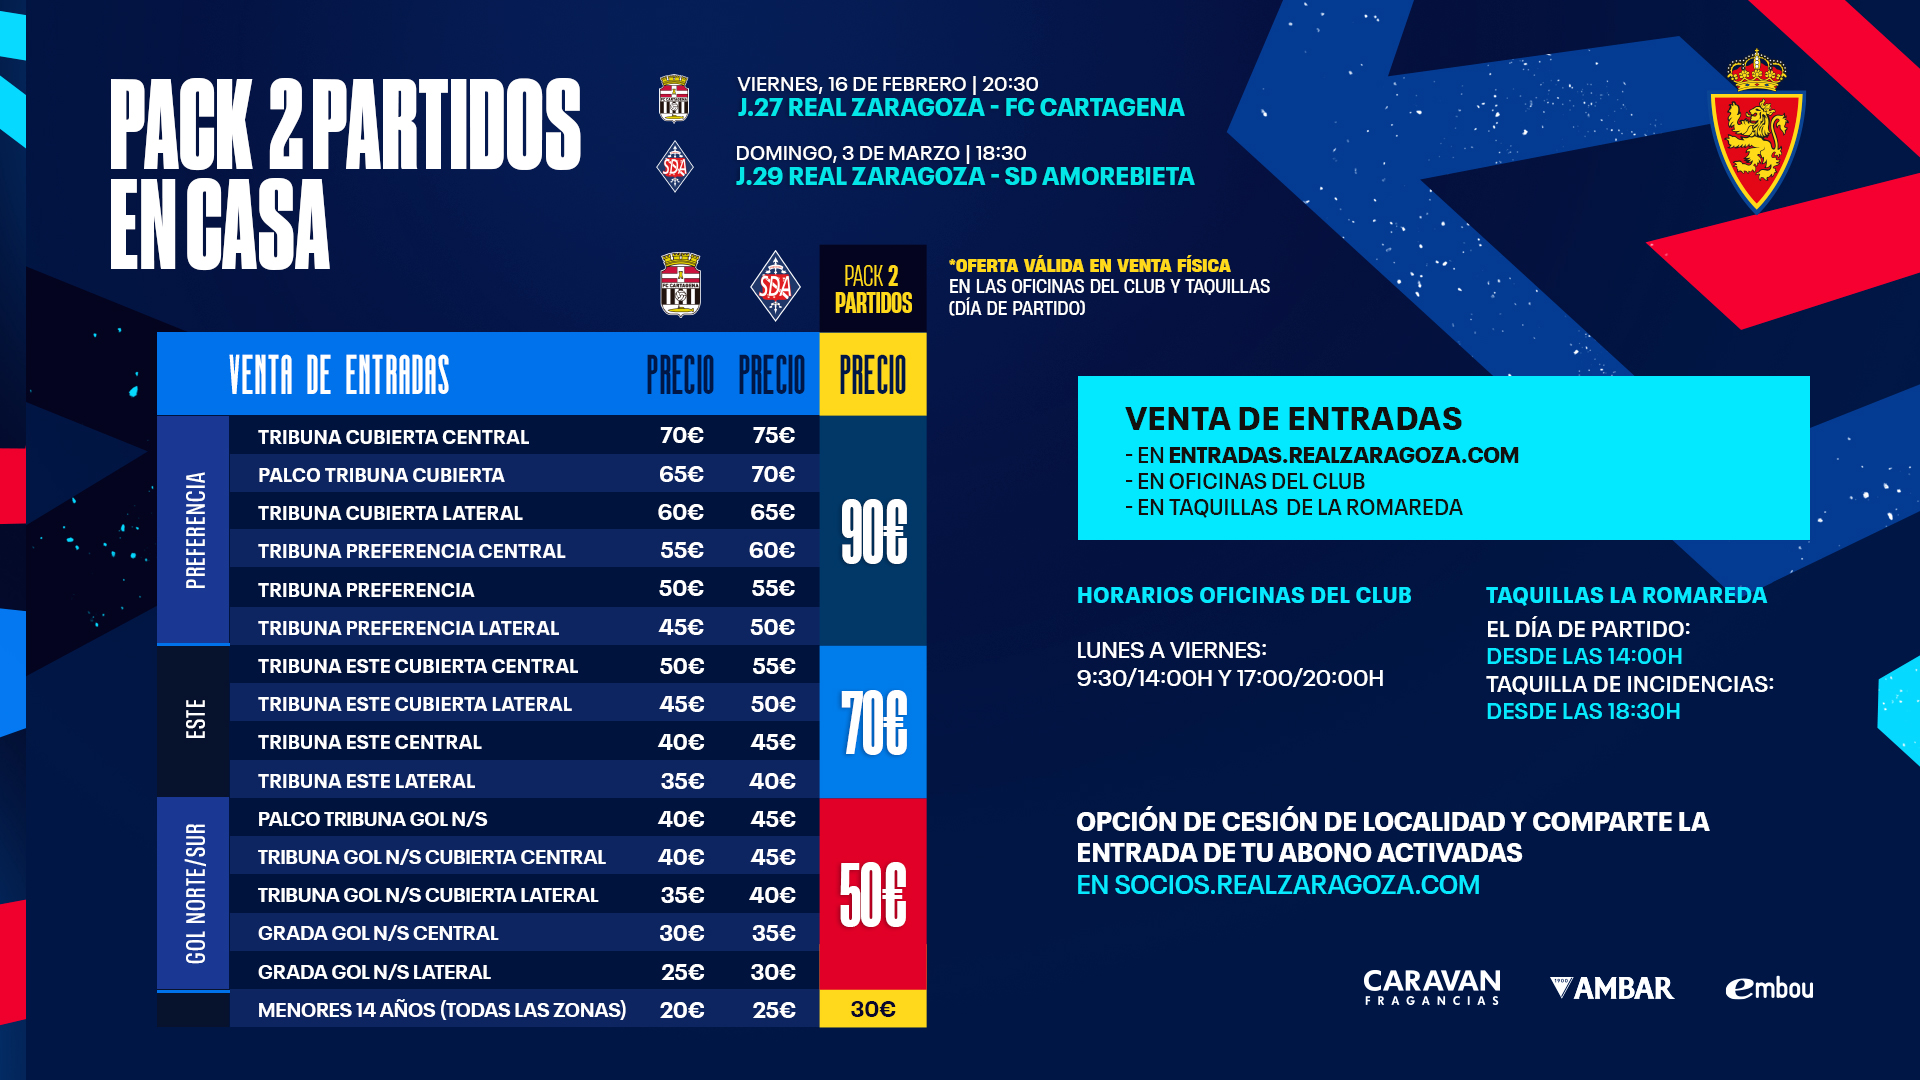 Real Zaragoza: 14 partidos y un destino (el que sea)